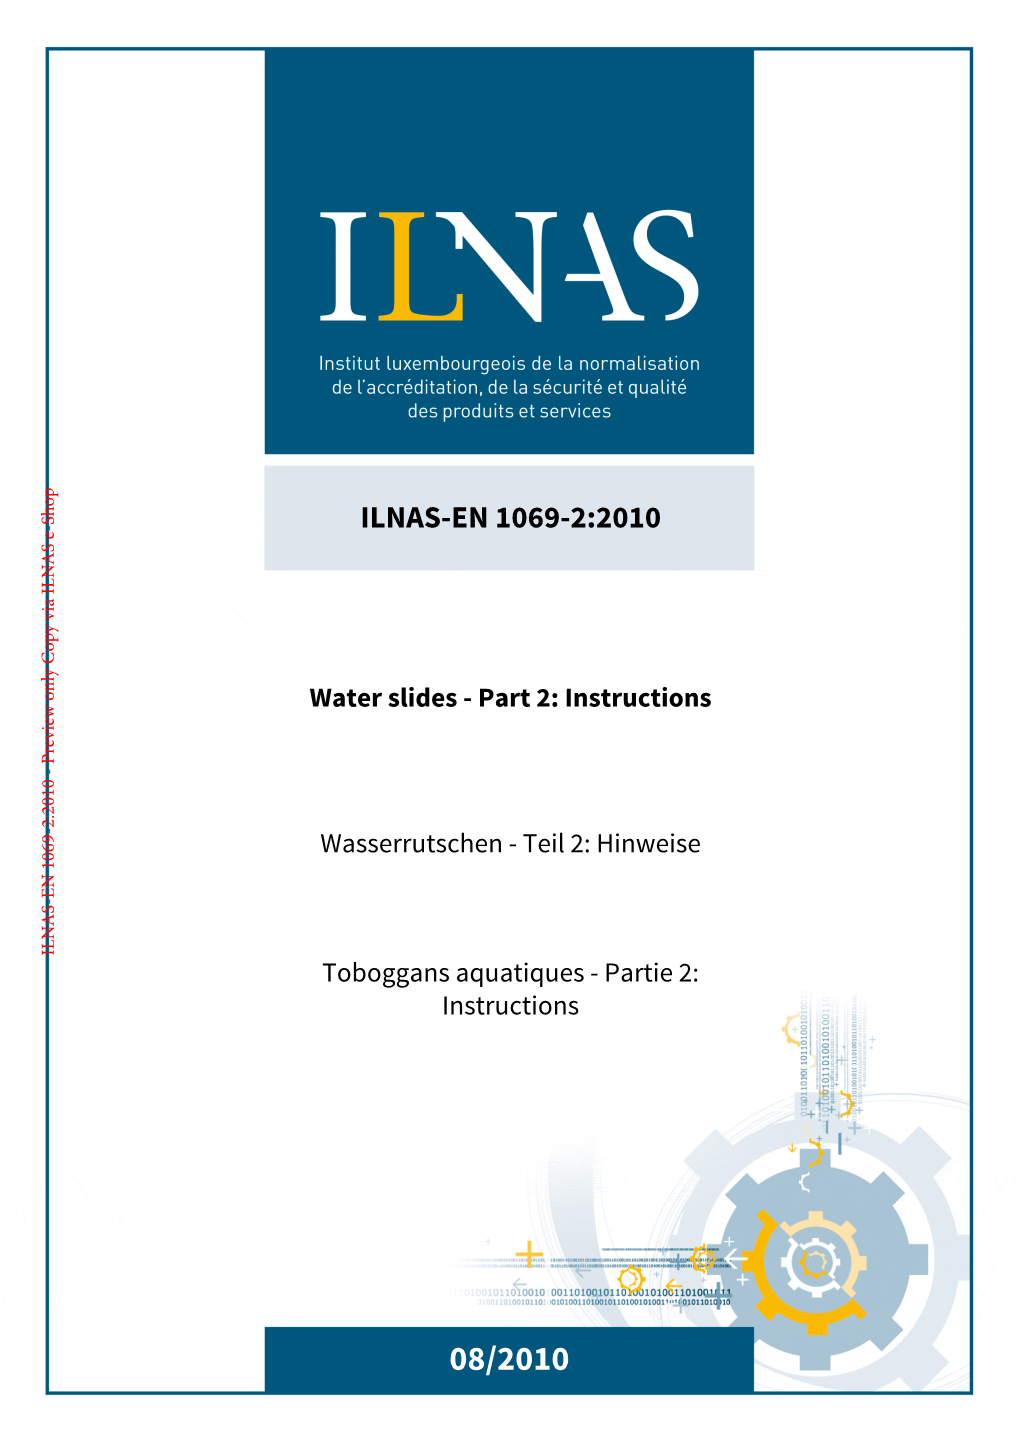 ILNAS-EN 1069-2:2010 Water Slides